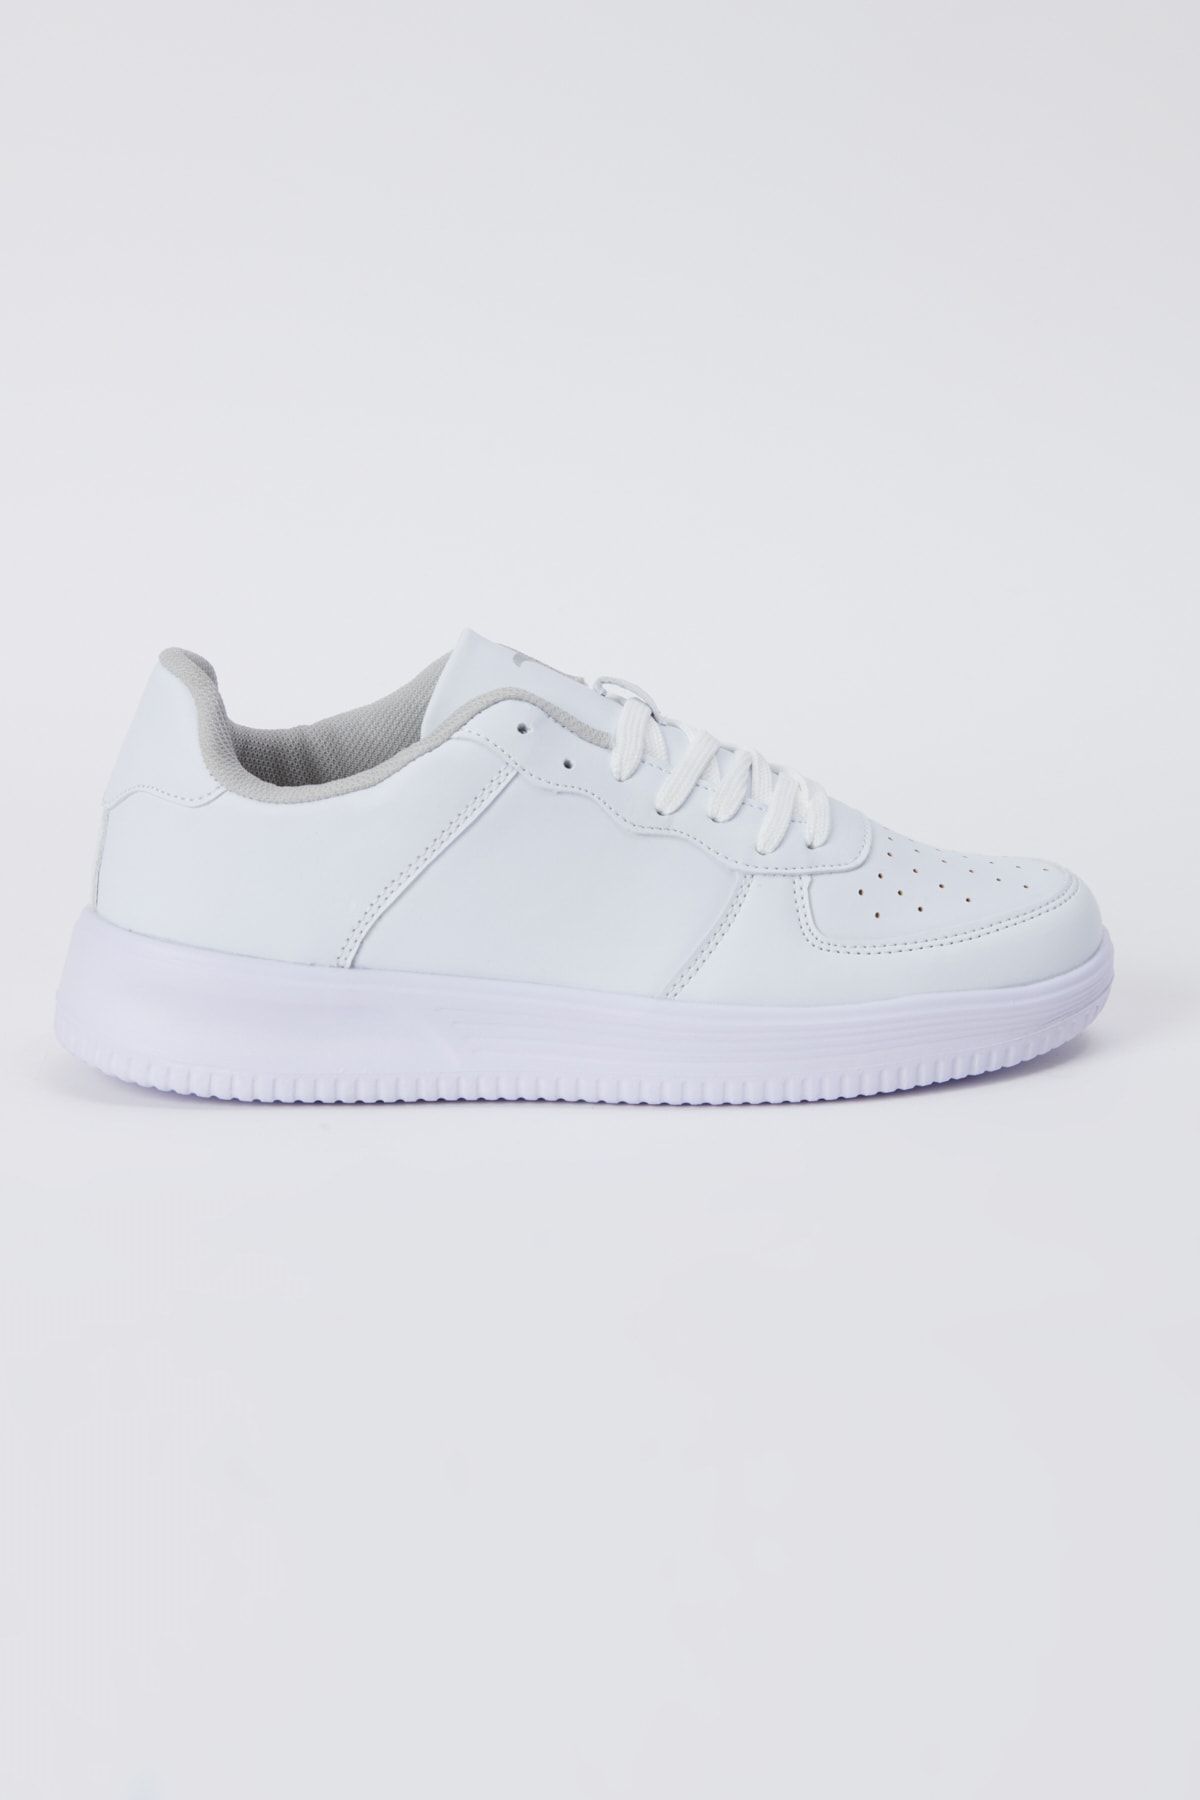 Levně AC&Co / Altınyıldız Classics Men's White Laced Comfort Sole Casual Sneaker Shoes